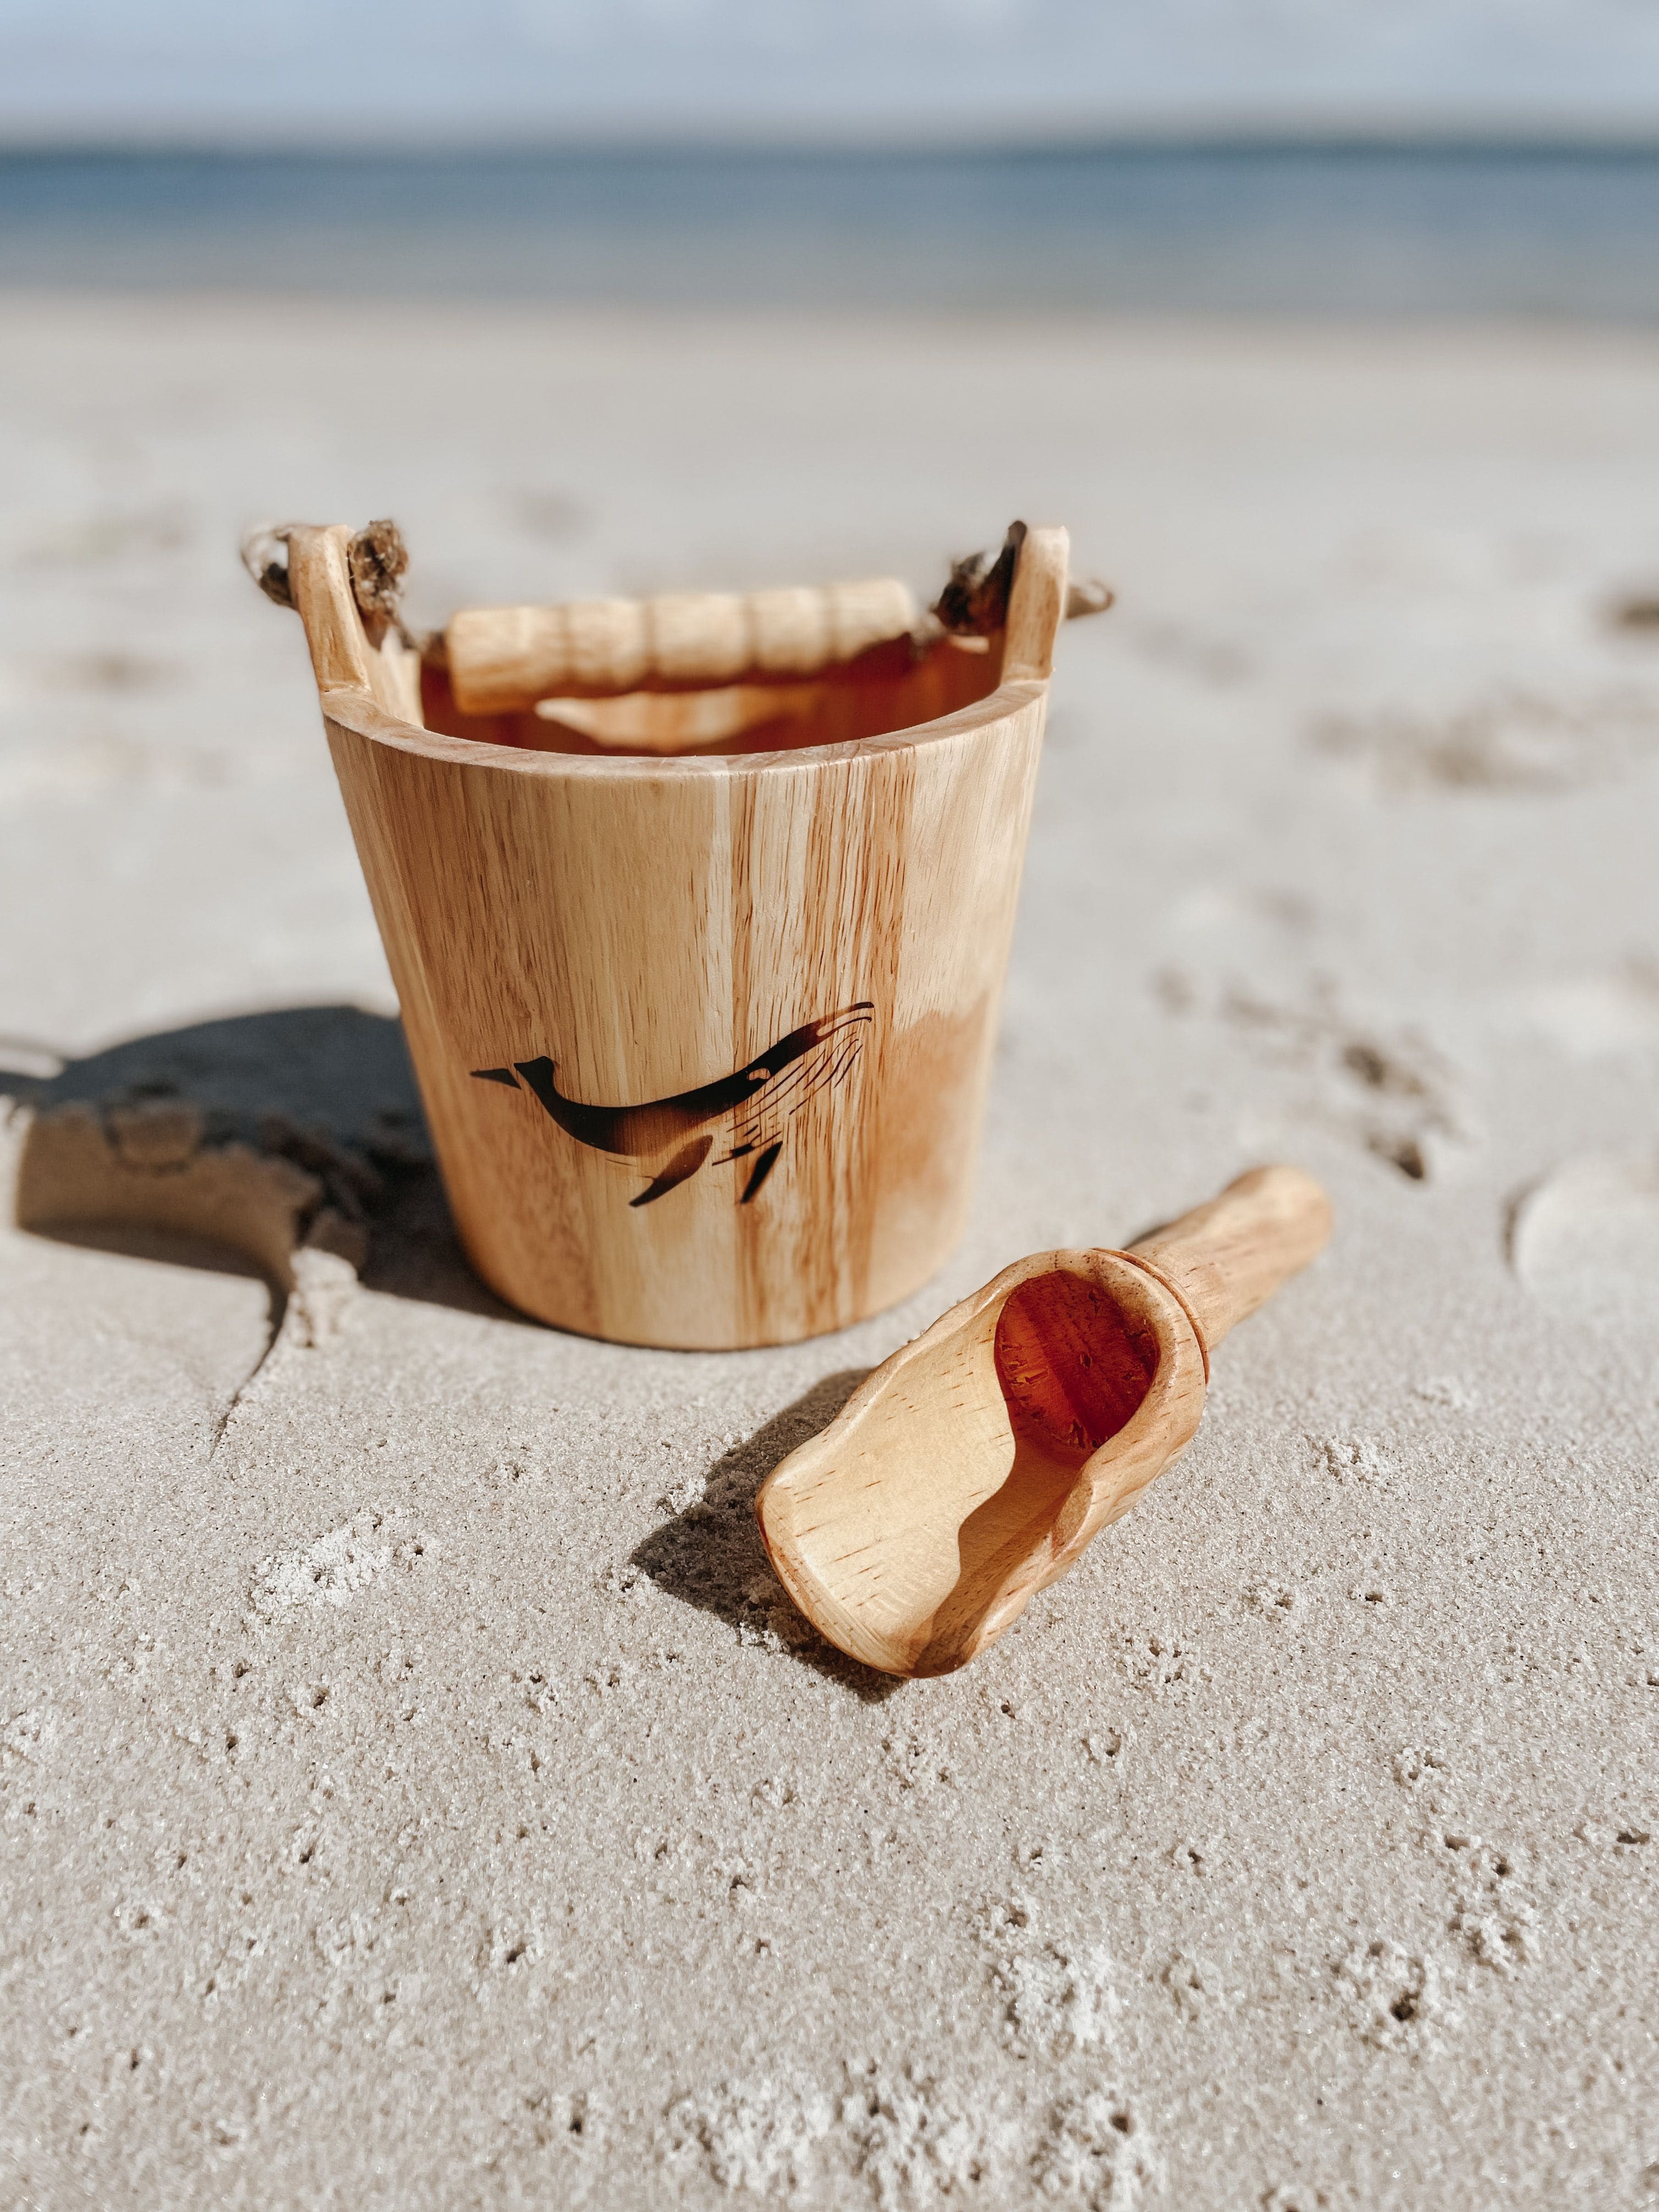 Explore Nook Wooden Bucket and Scoop Set